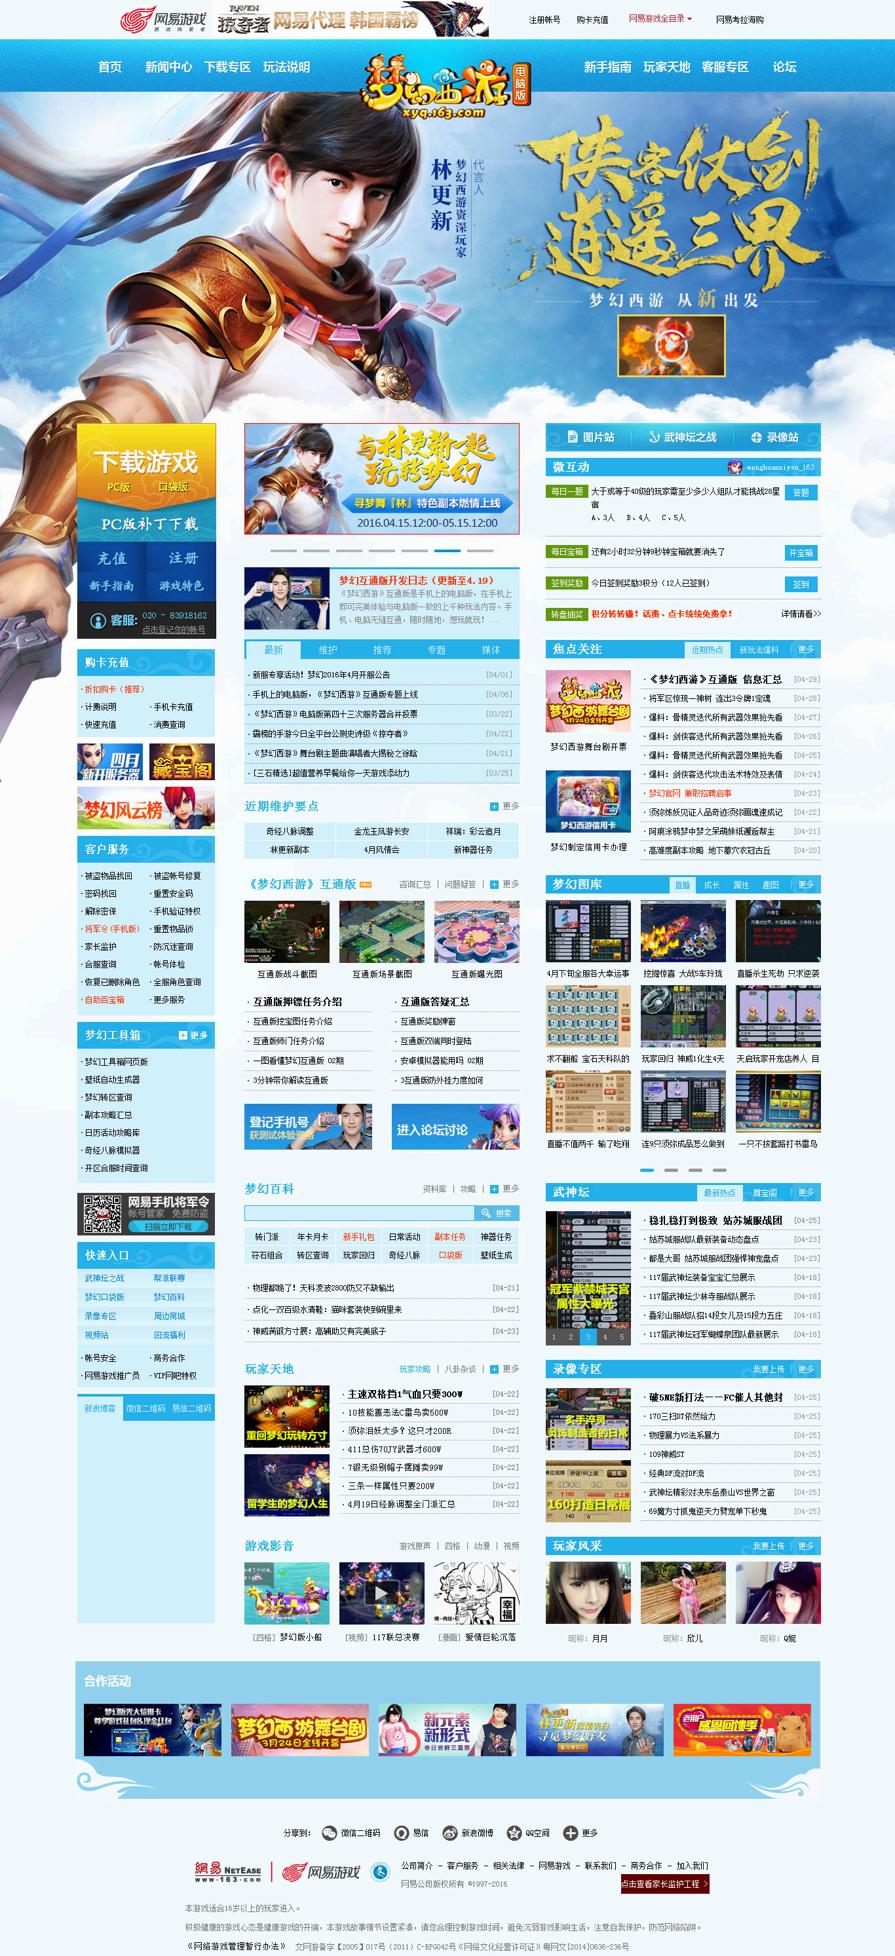 蓝色的梦幻西游游戏官网模板源码下载